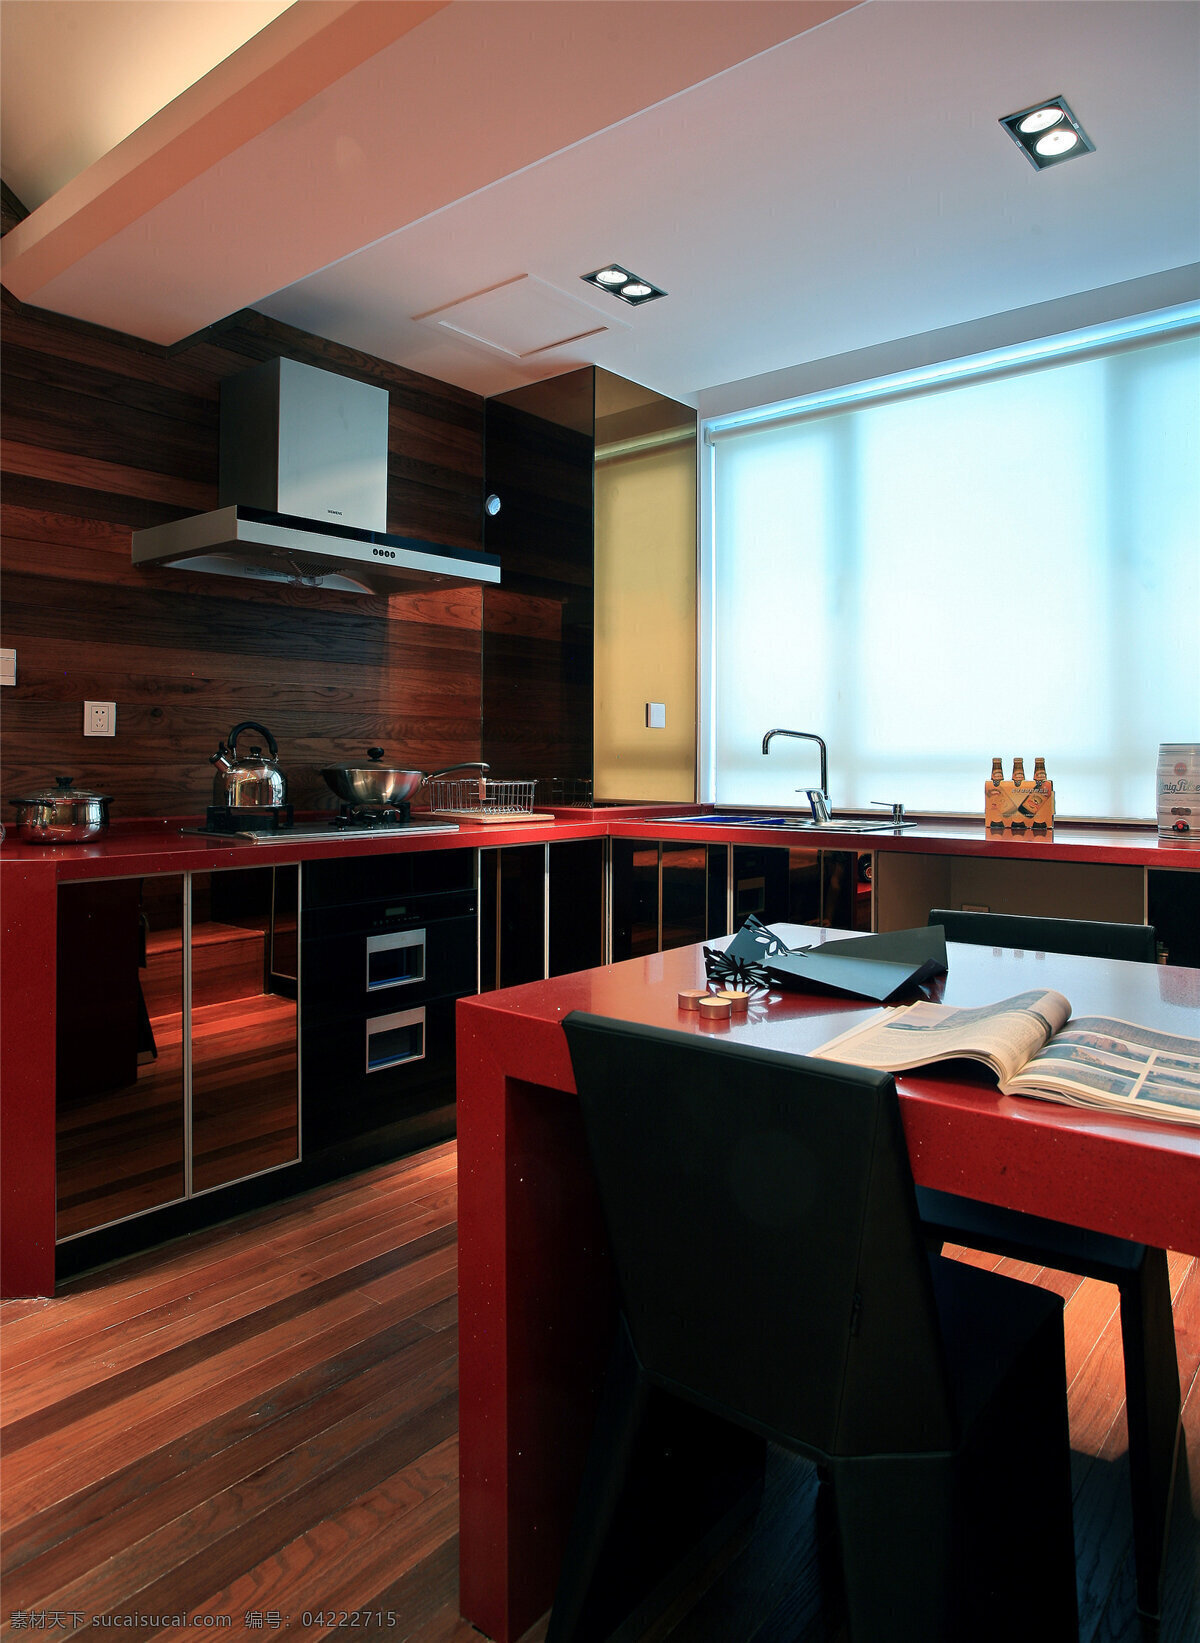 简约 风 室内设计 餐厅 黑红 色调 效果图 现代 餐桌 抽油烟机 烤箱 家装